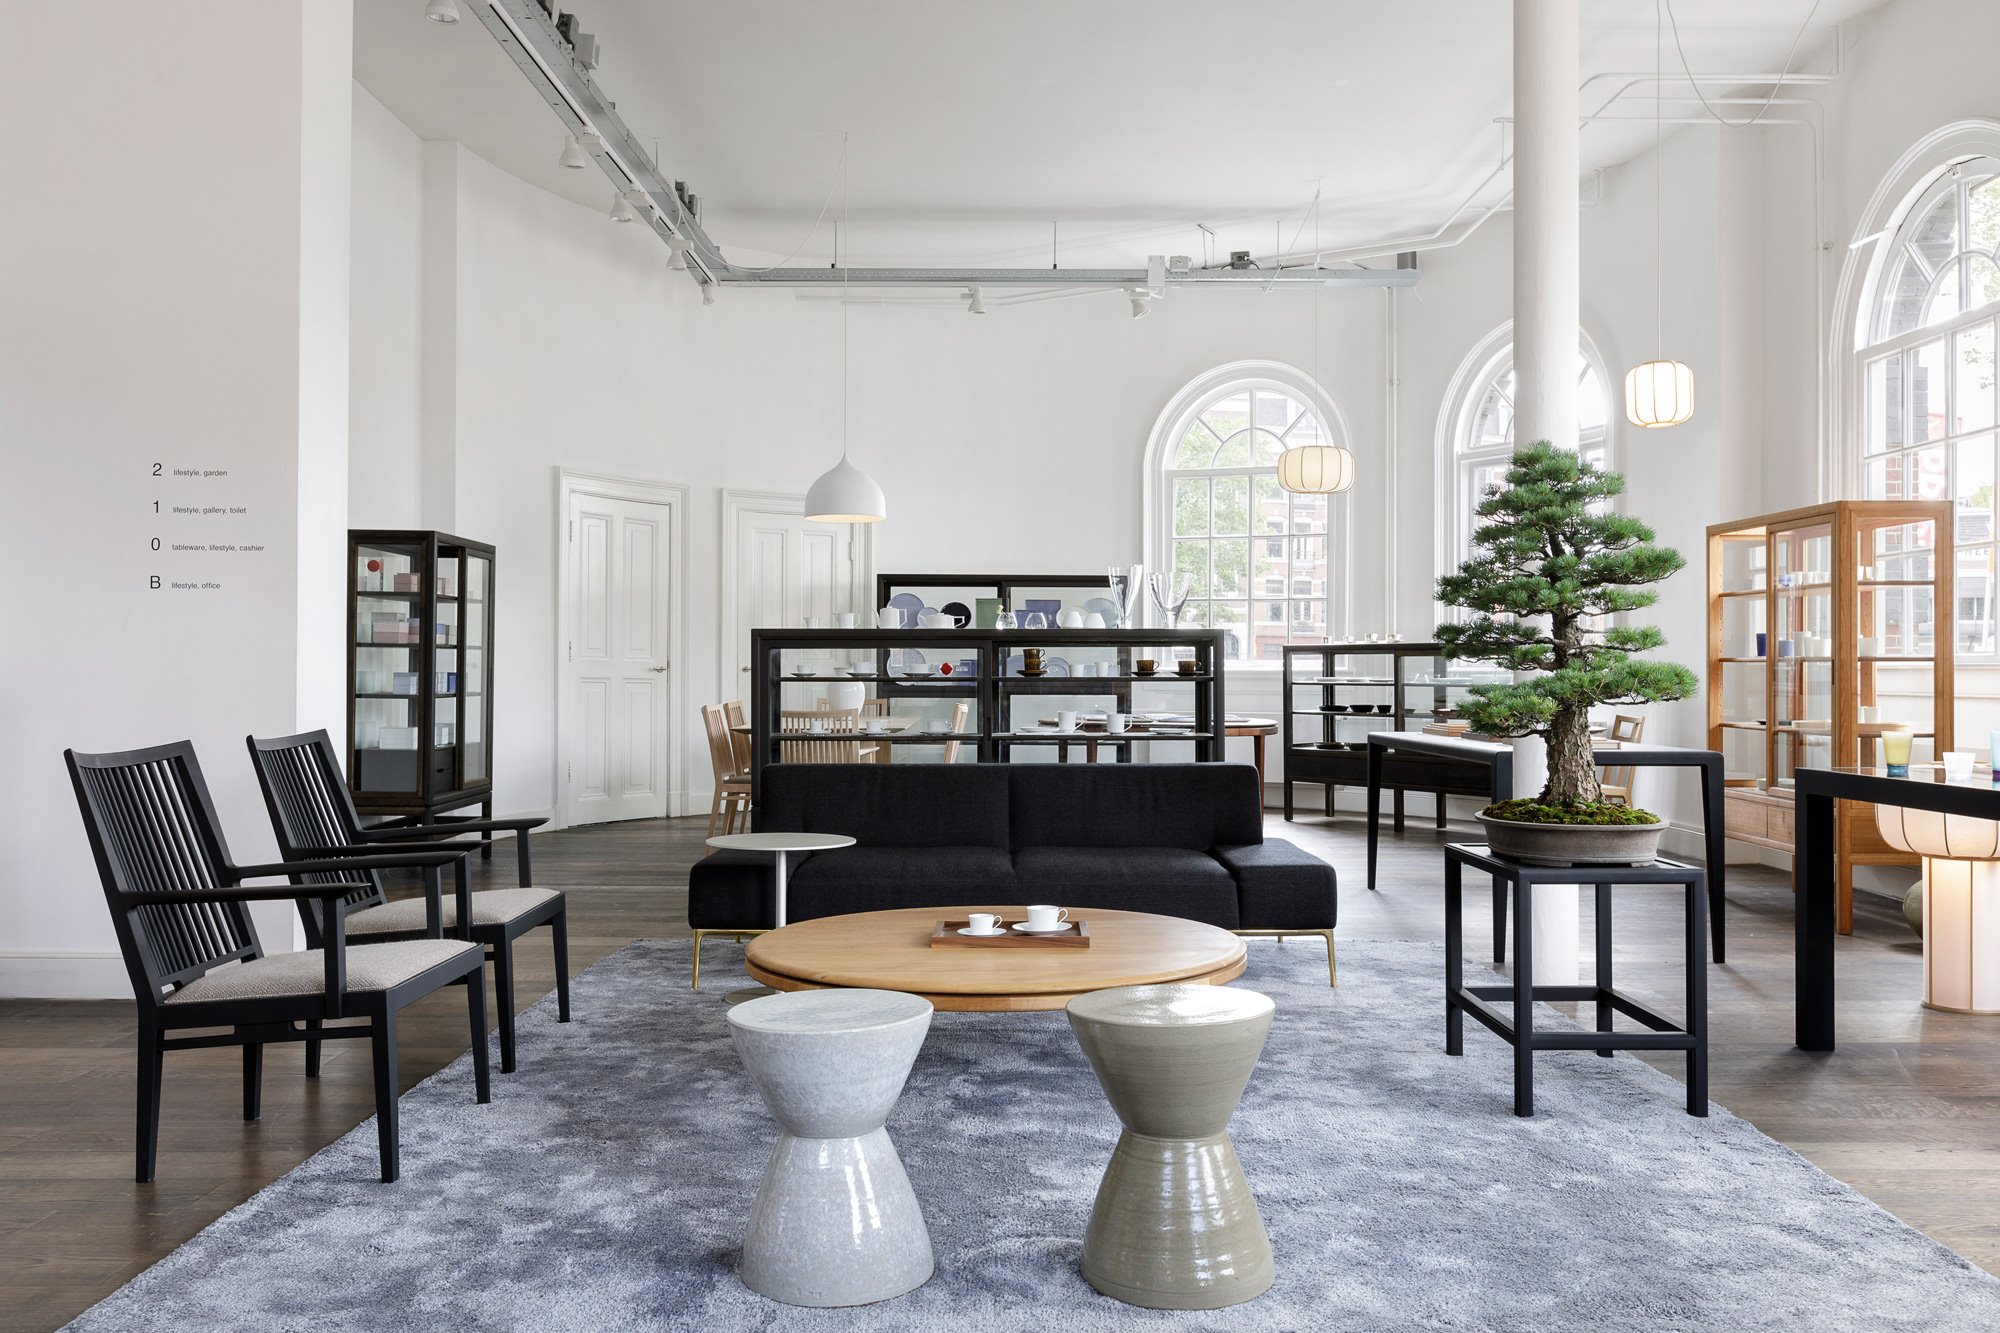 Tienda en Amsterdam de mobiliario moderno Time & Style creada por Kengo Kuma bonsai sillas negras y mesillas auxiliares lacadas